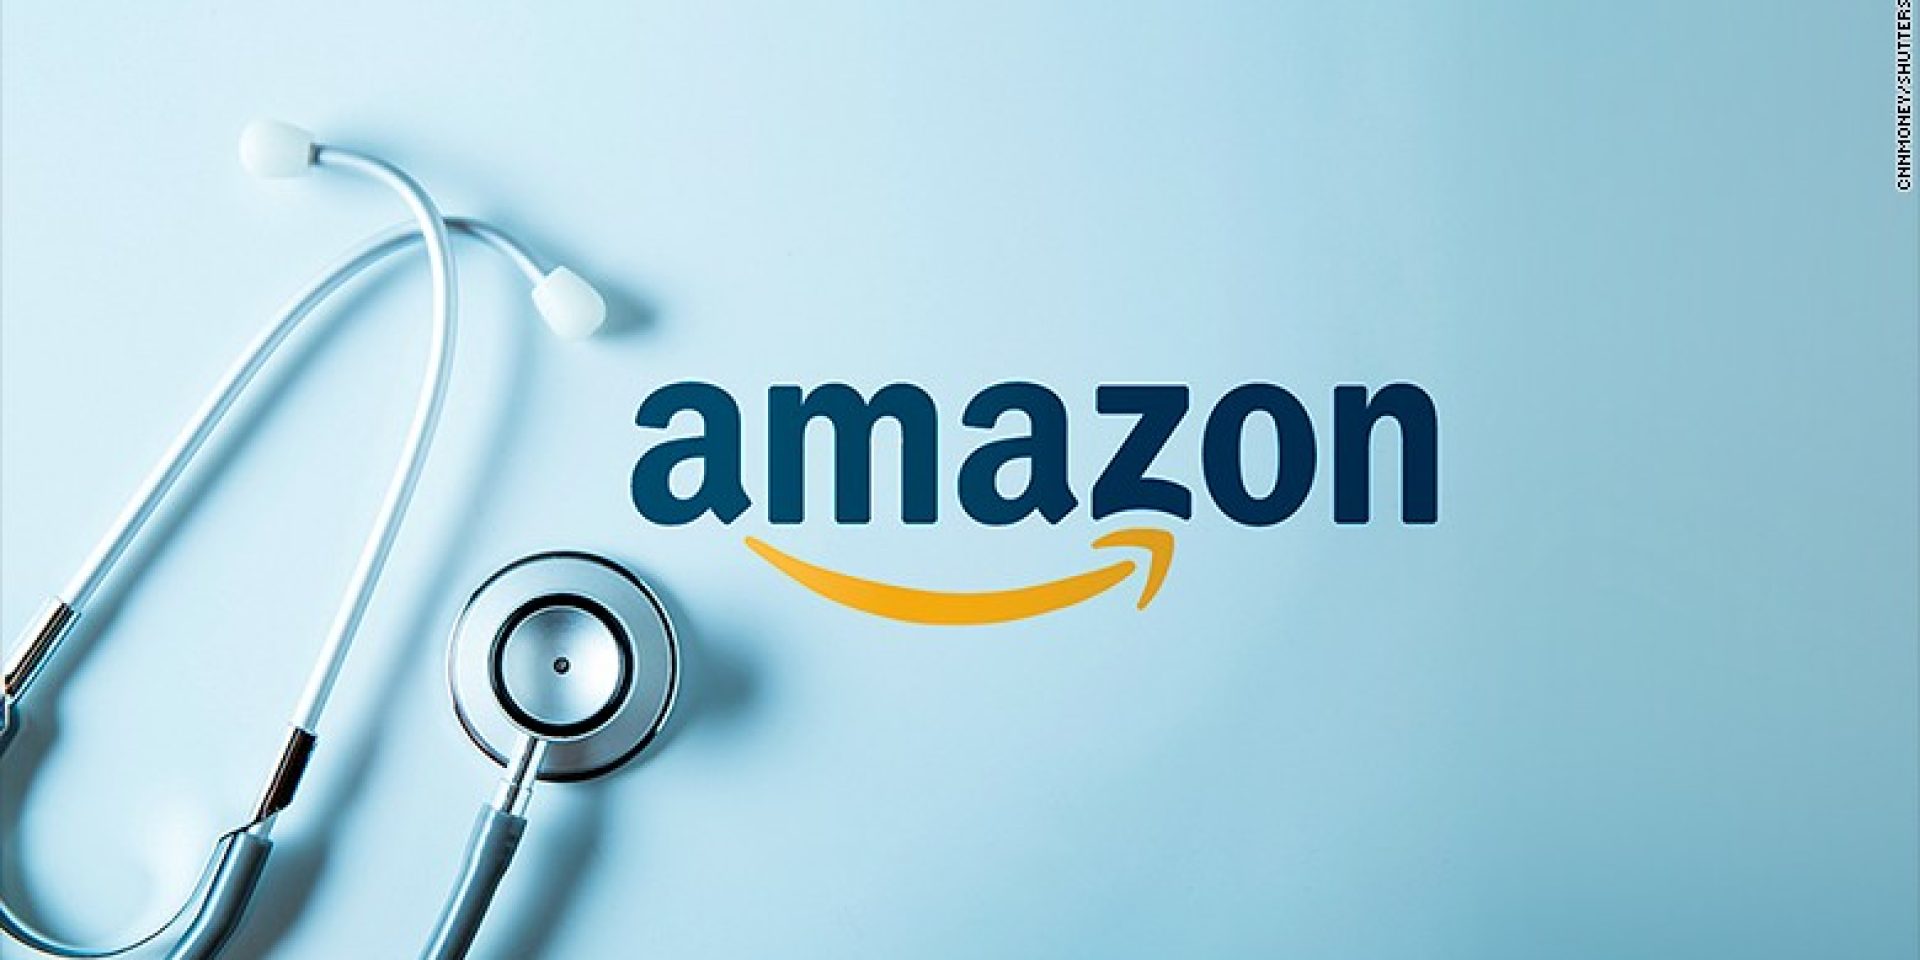 Η Amazon, η στρατηγική της και η επένδυση στην υγειονομική περίθαλψη